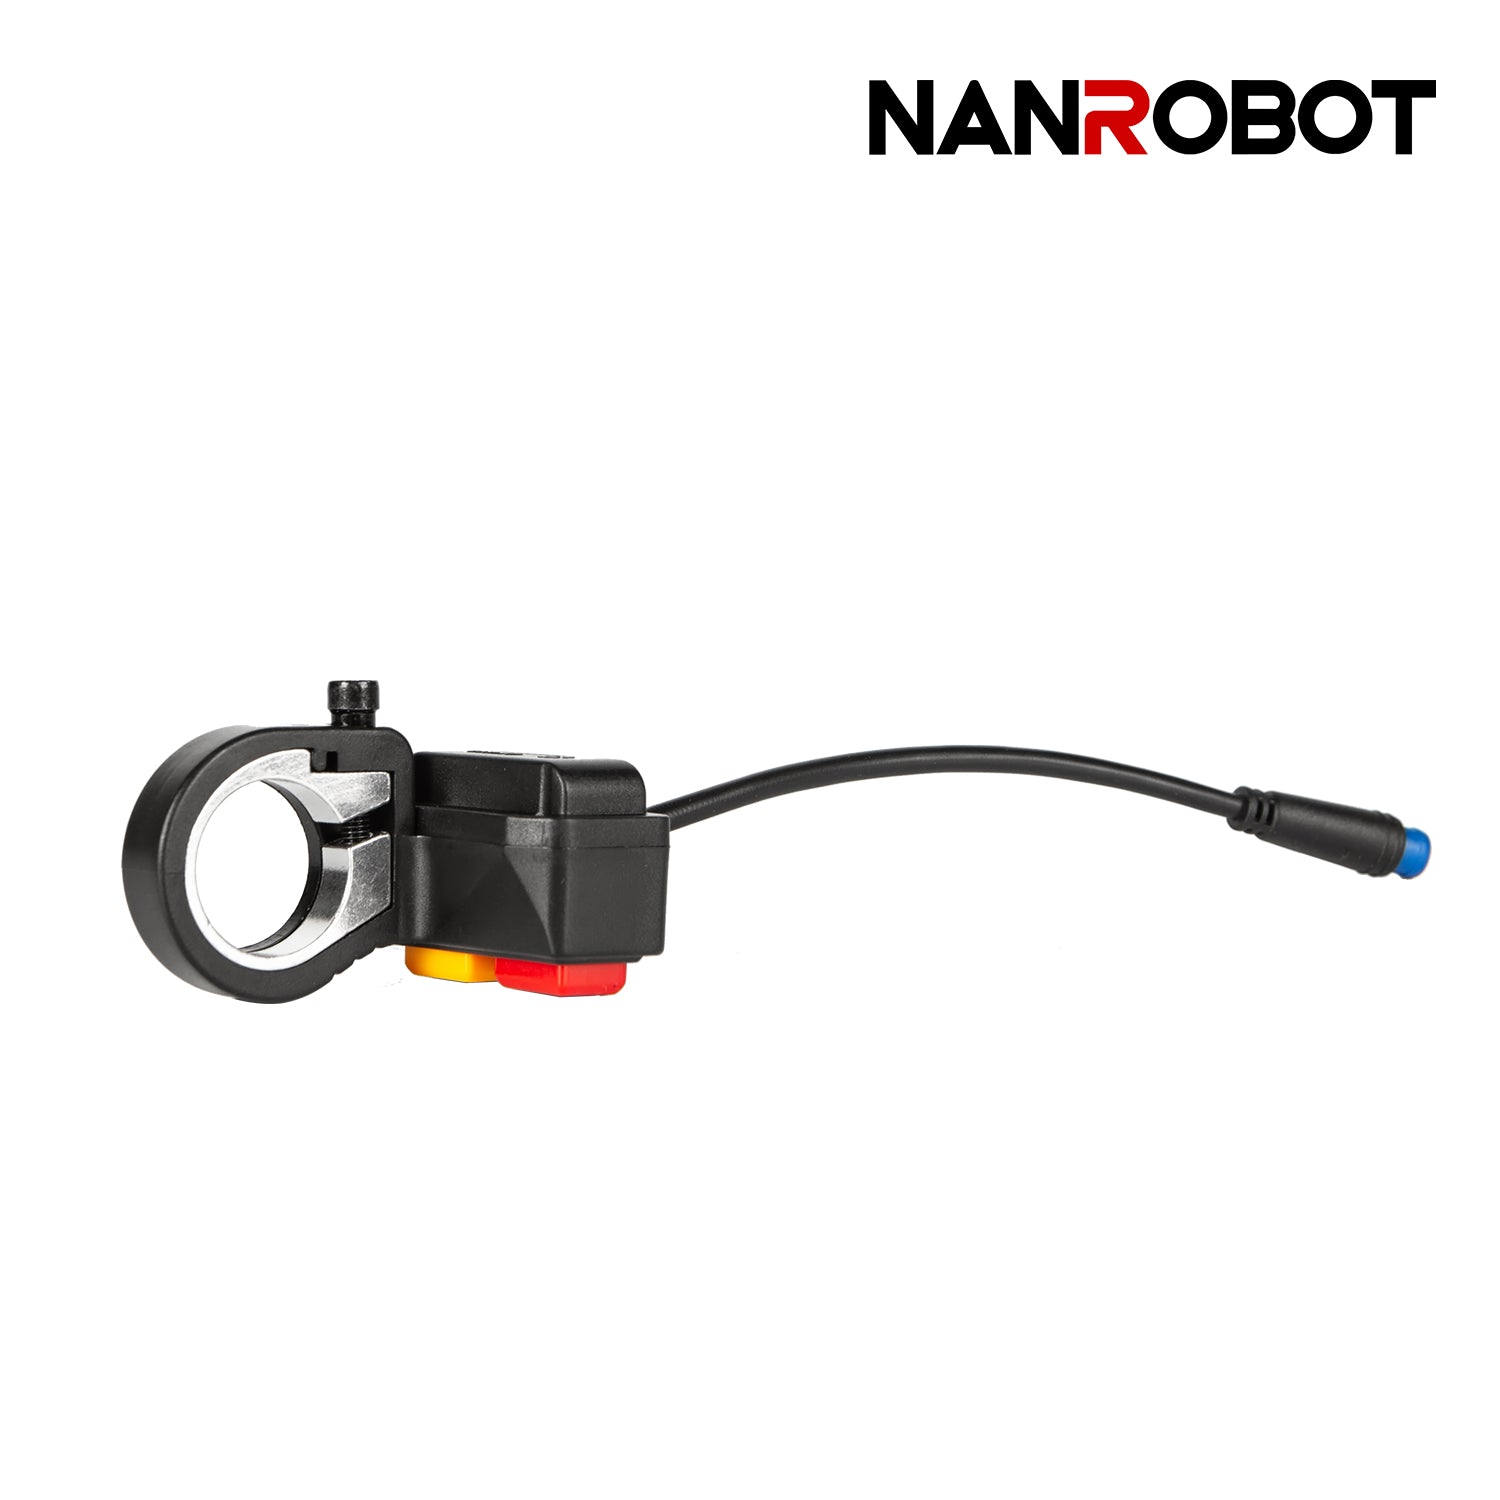 Double drive button - NANROBOT